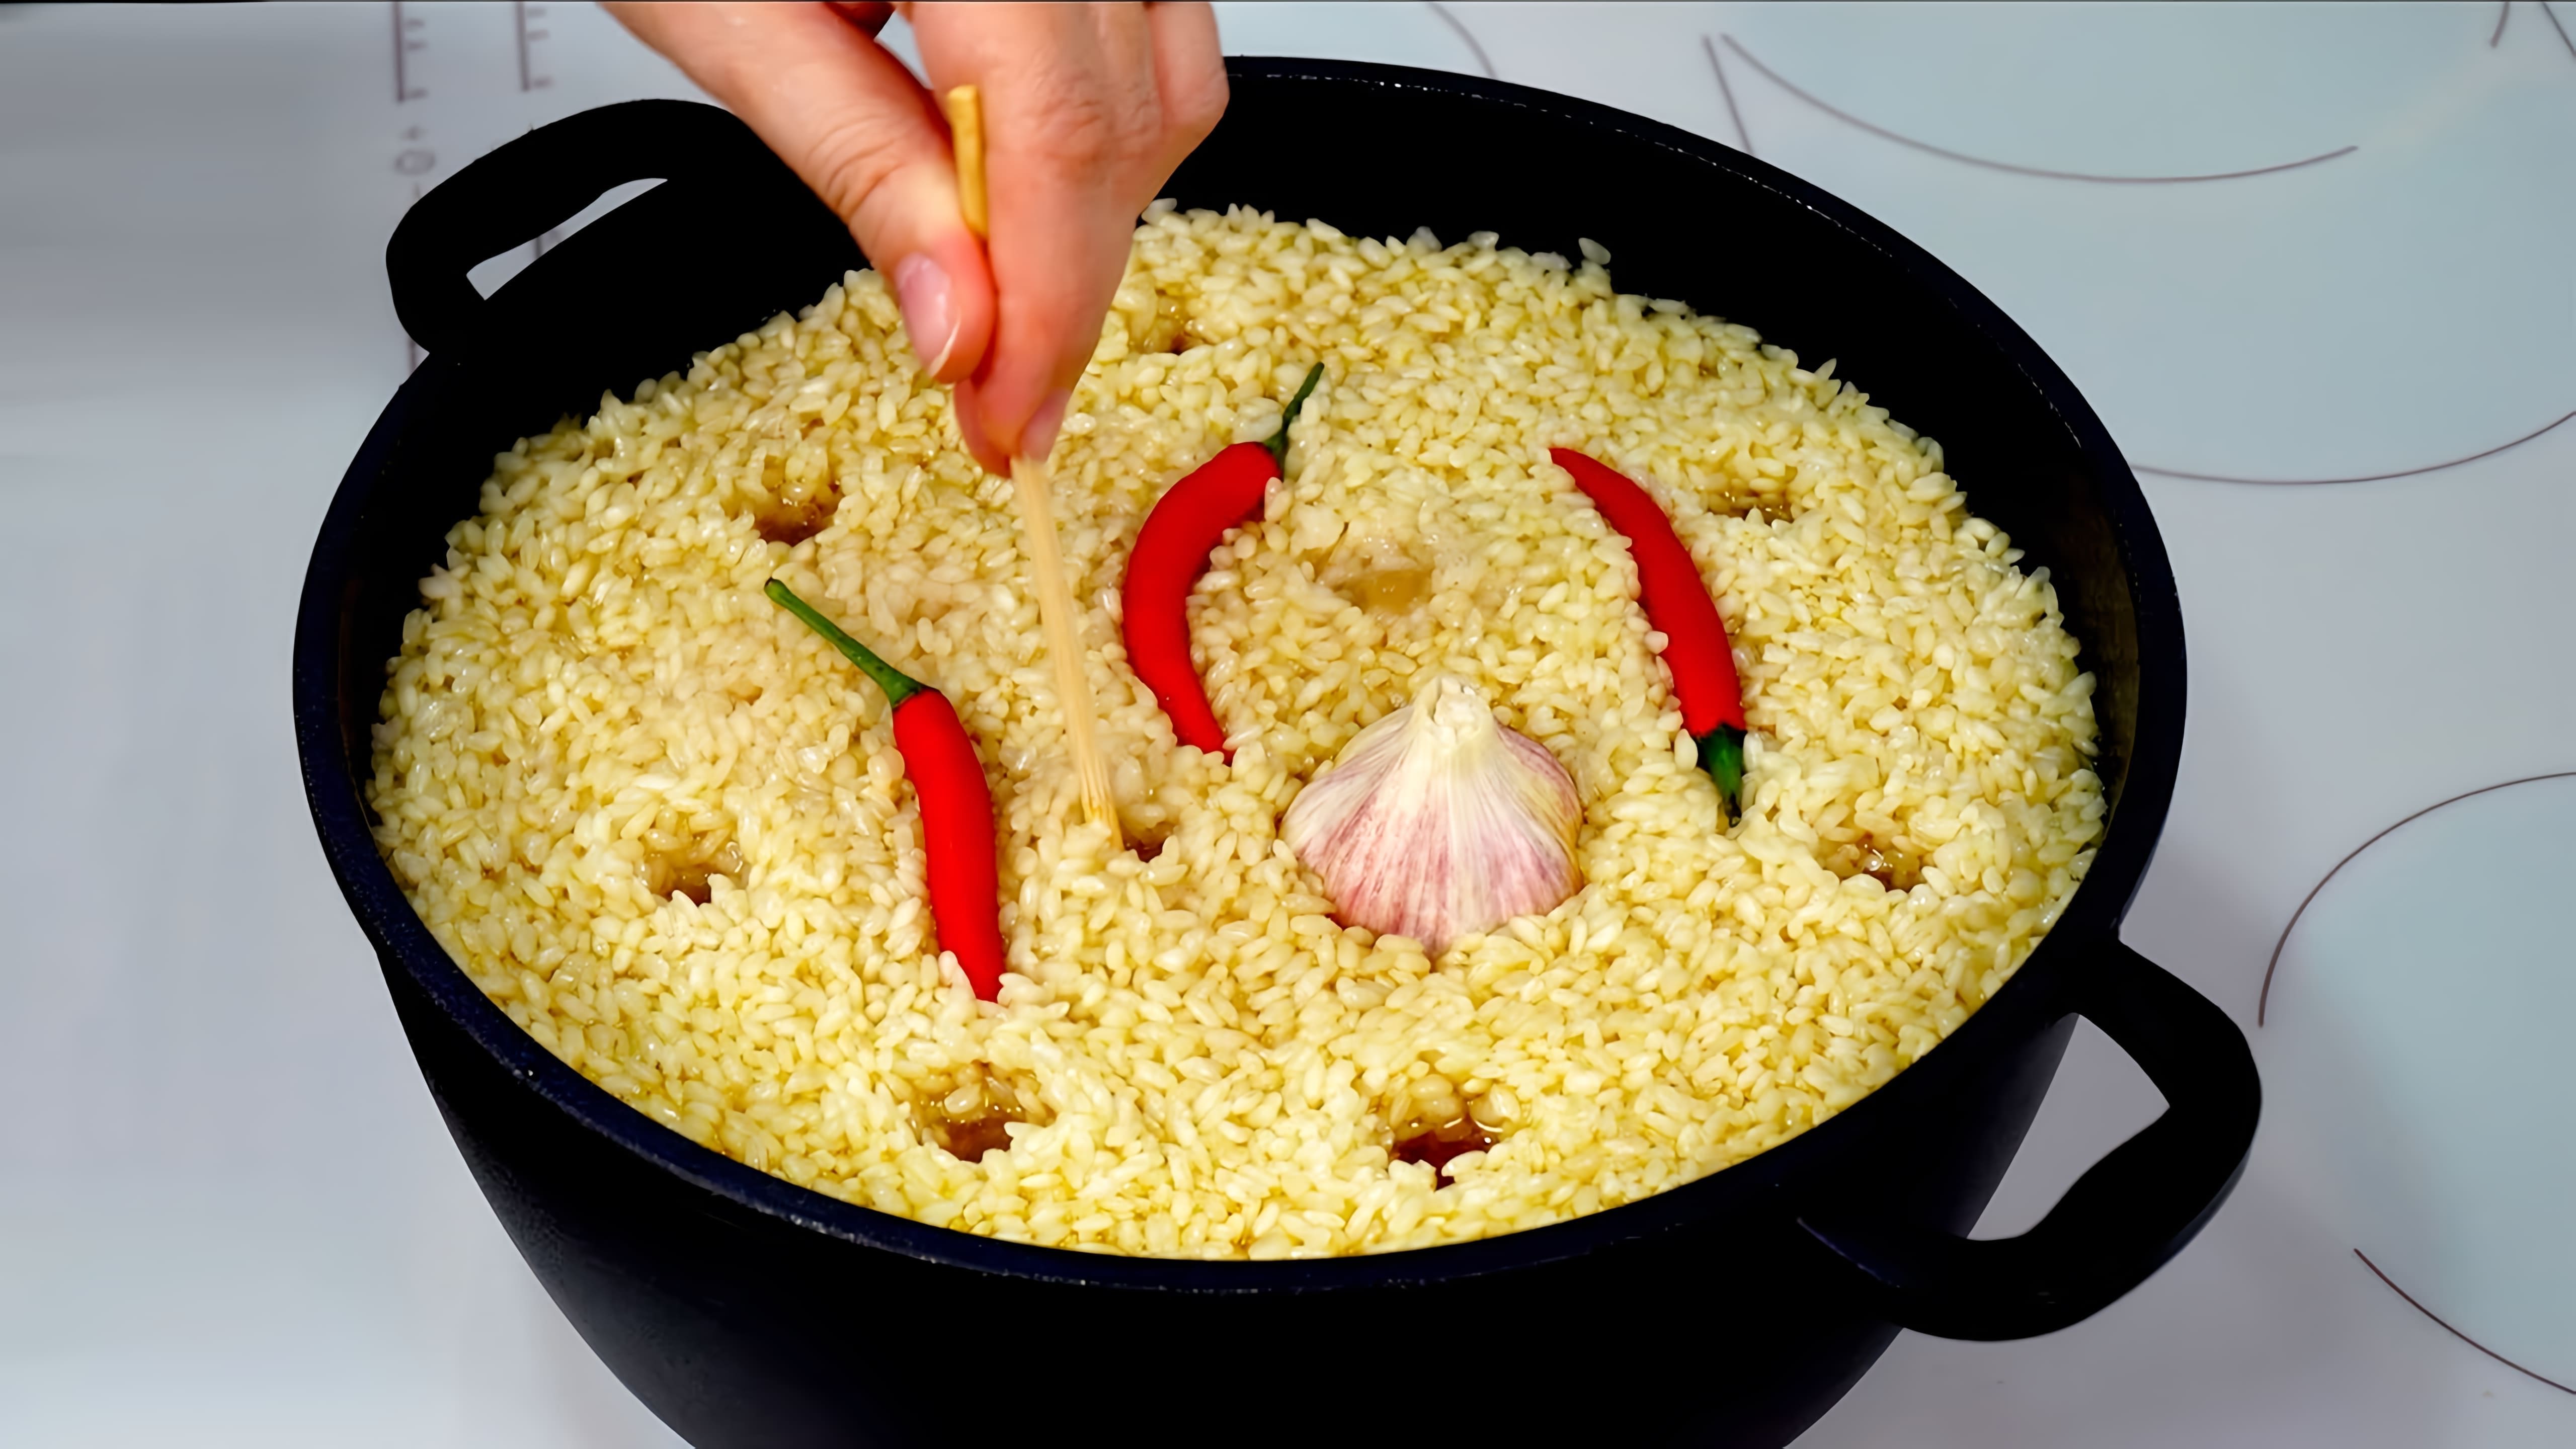 Видео демонстрирует три рецепта плова (плова), популярного центральноазиатского рисового блюда - приготовленного на плите, в духовке и в мультиварке